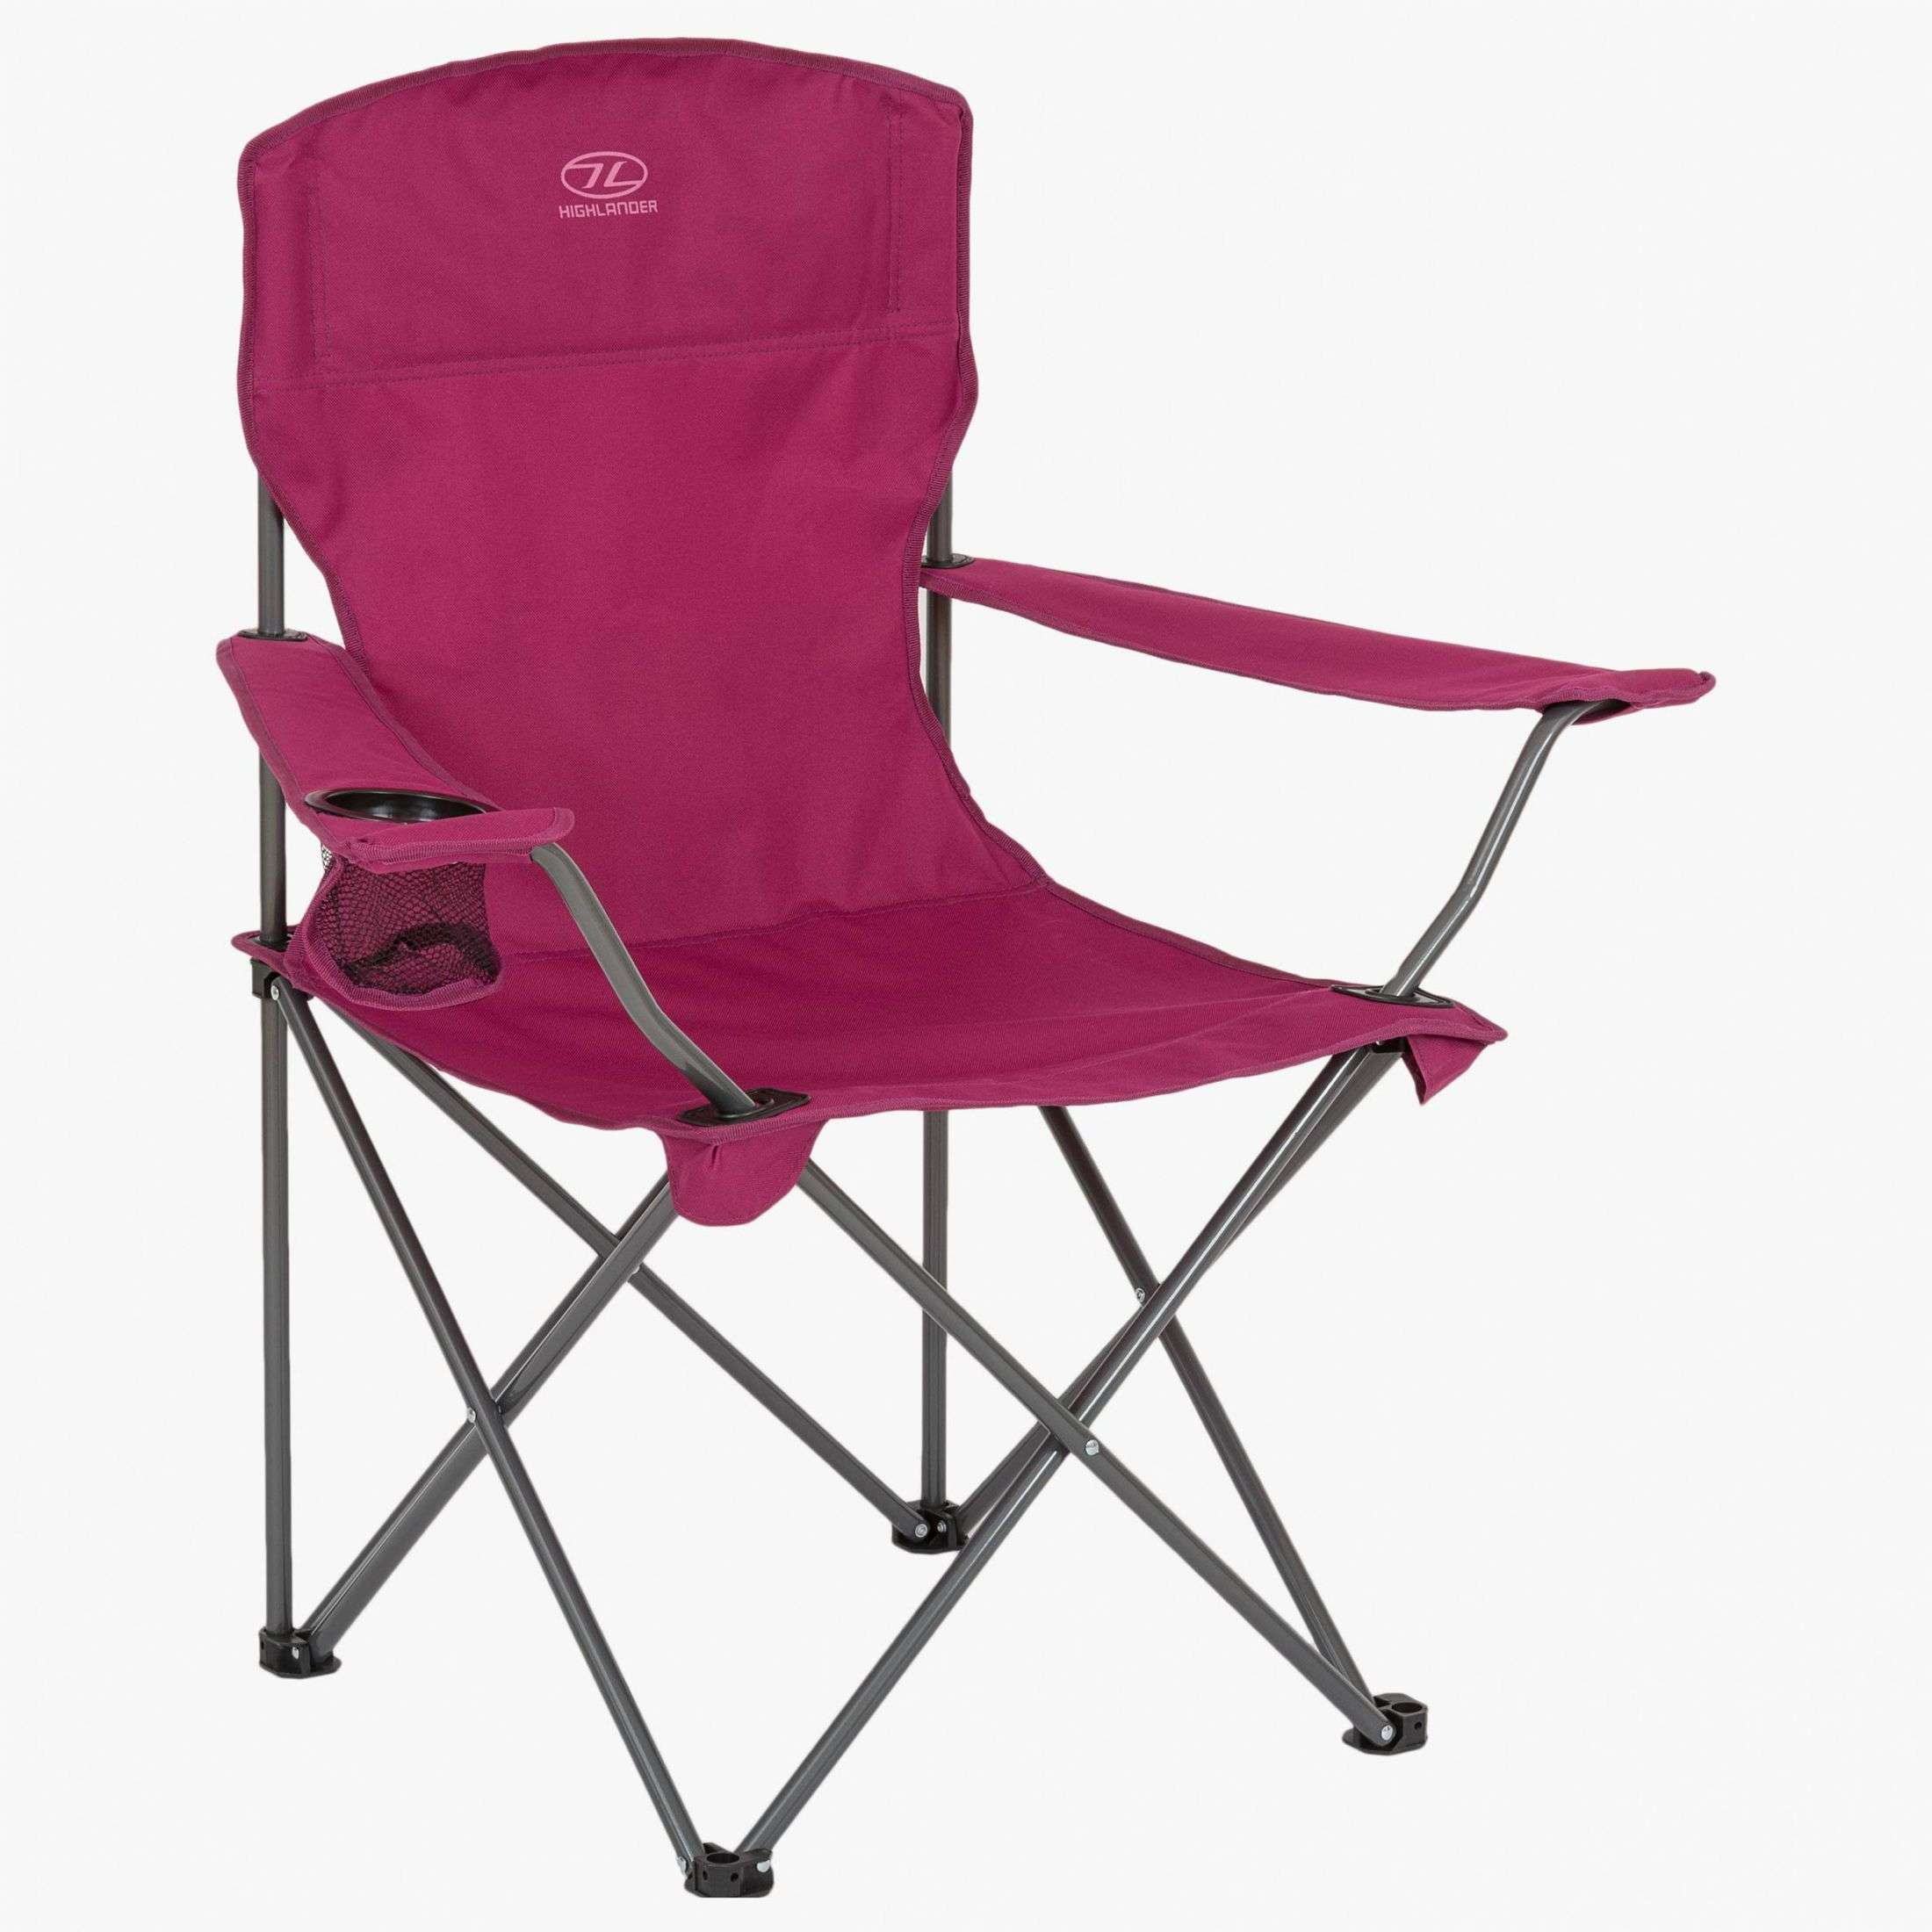 Highlander, Highlander Edinburgh Camp Chair, Chairs,Wylies Outdoor World,